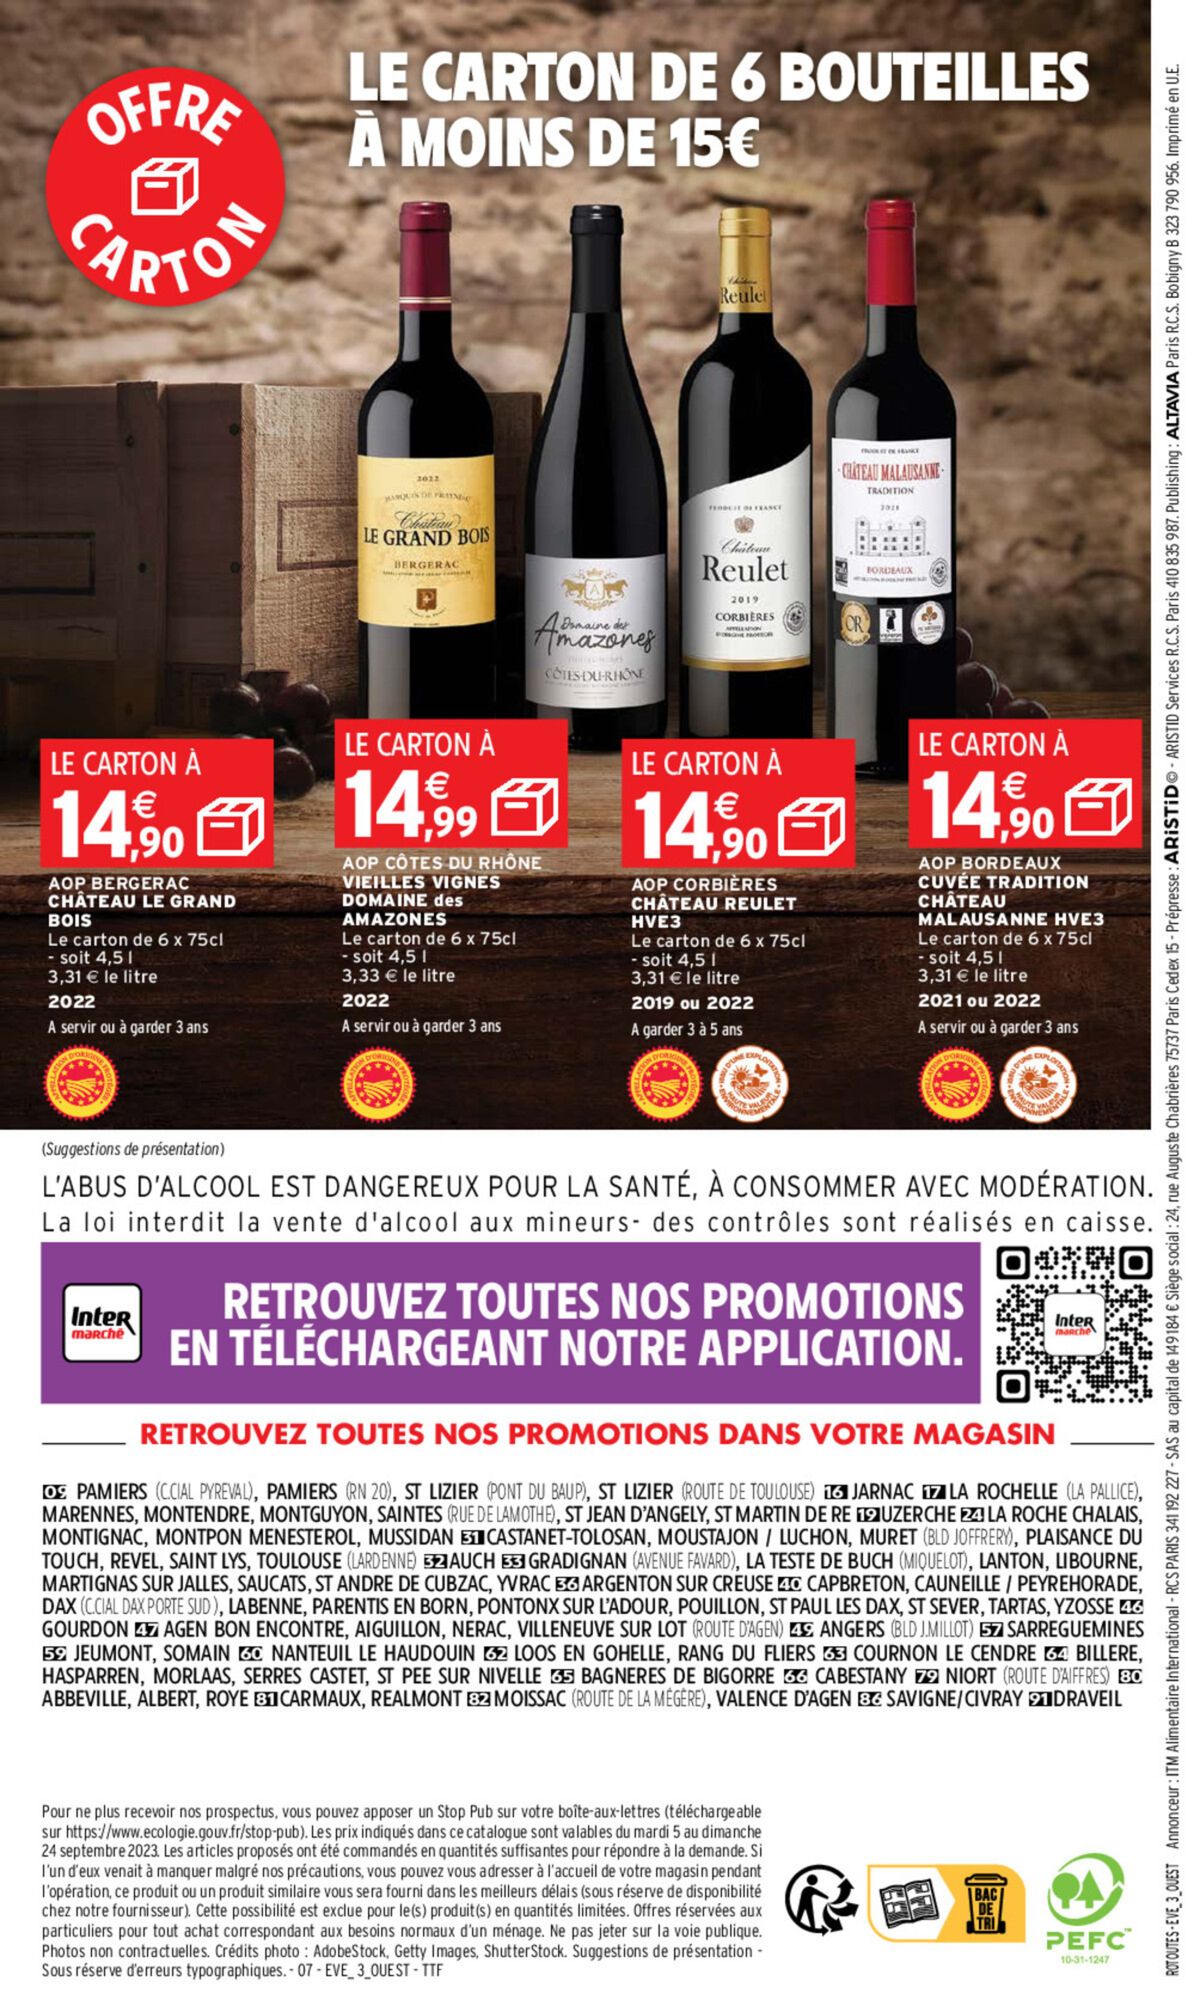 Catalogue Foire aux vins, page 00063